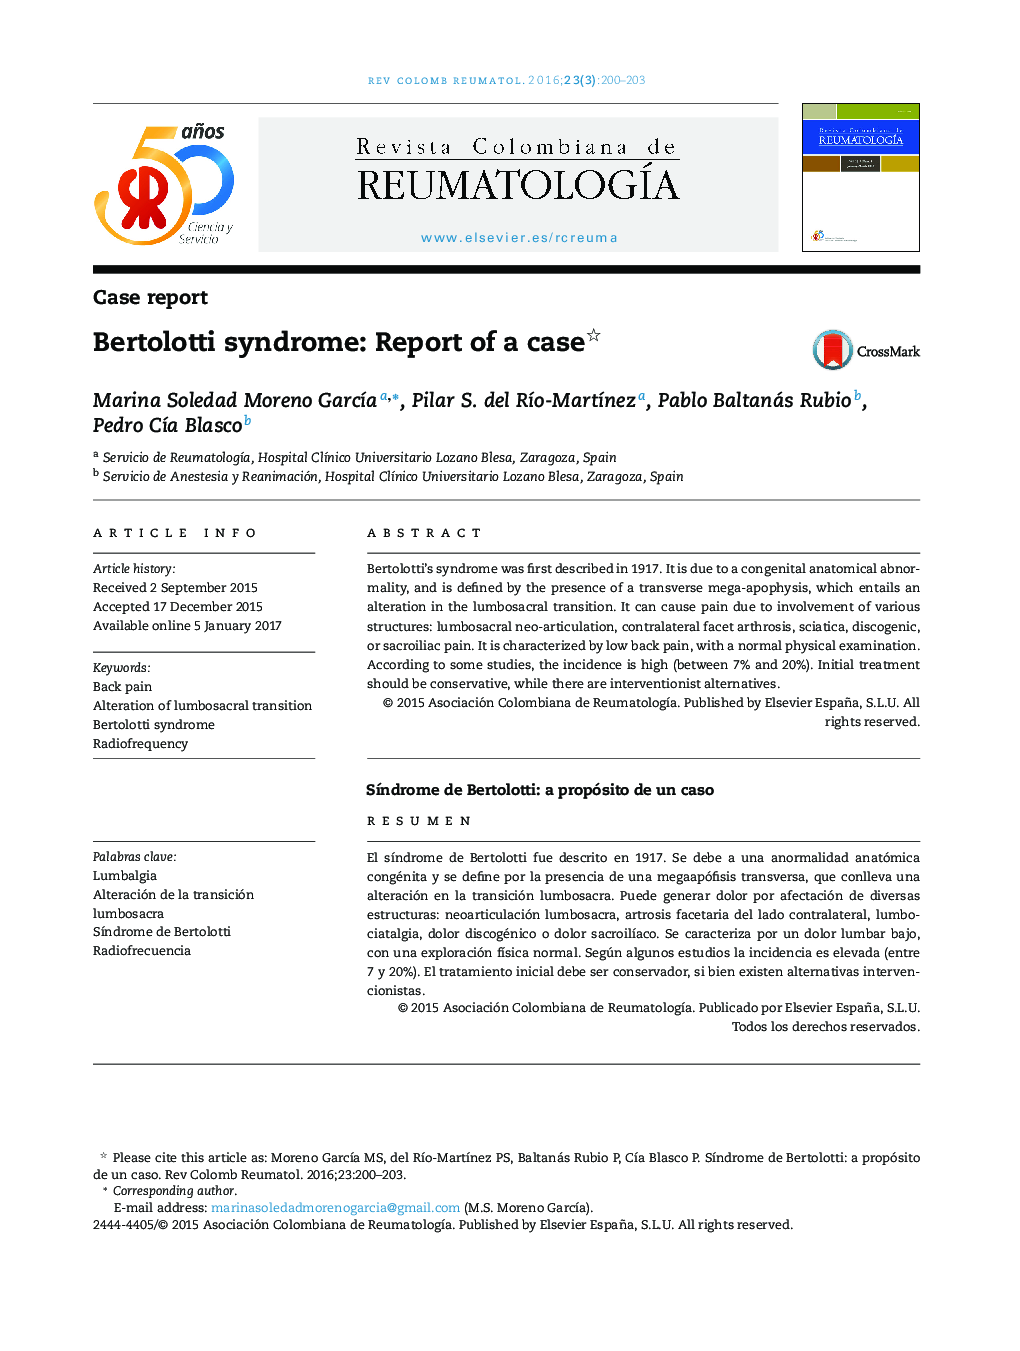 Bertolotti syndrome: Report of a case